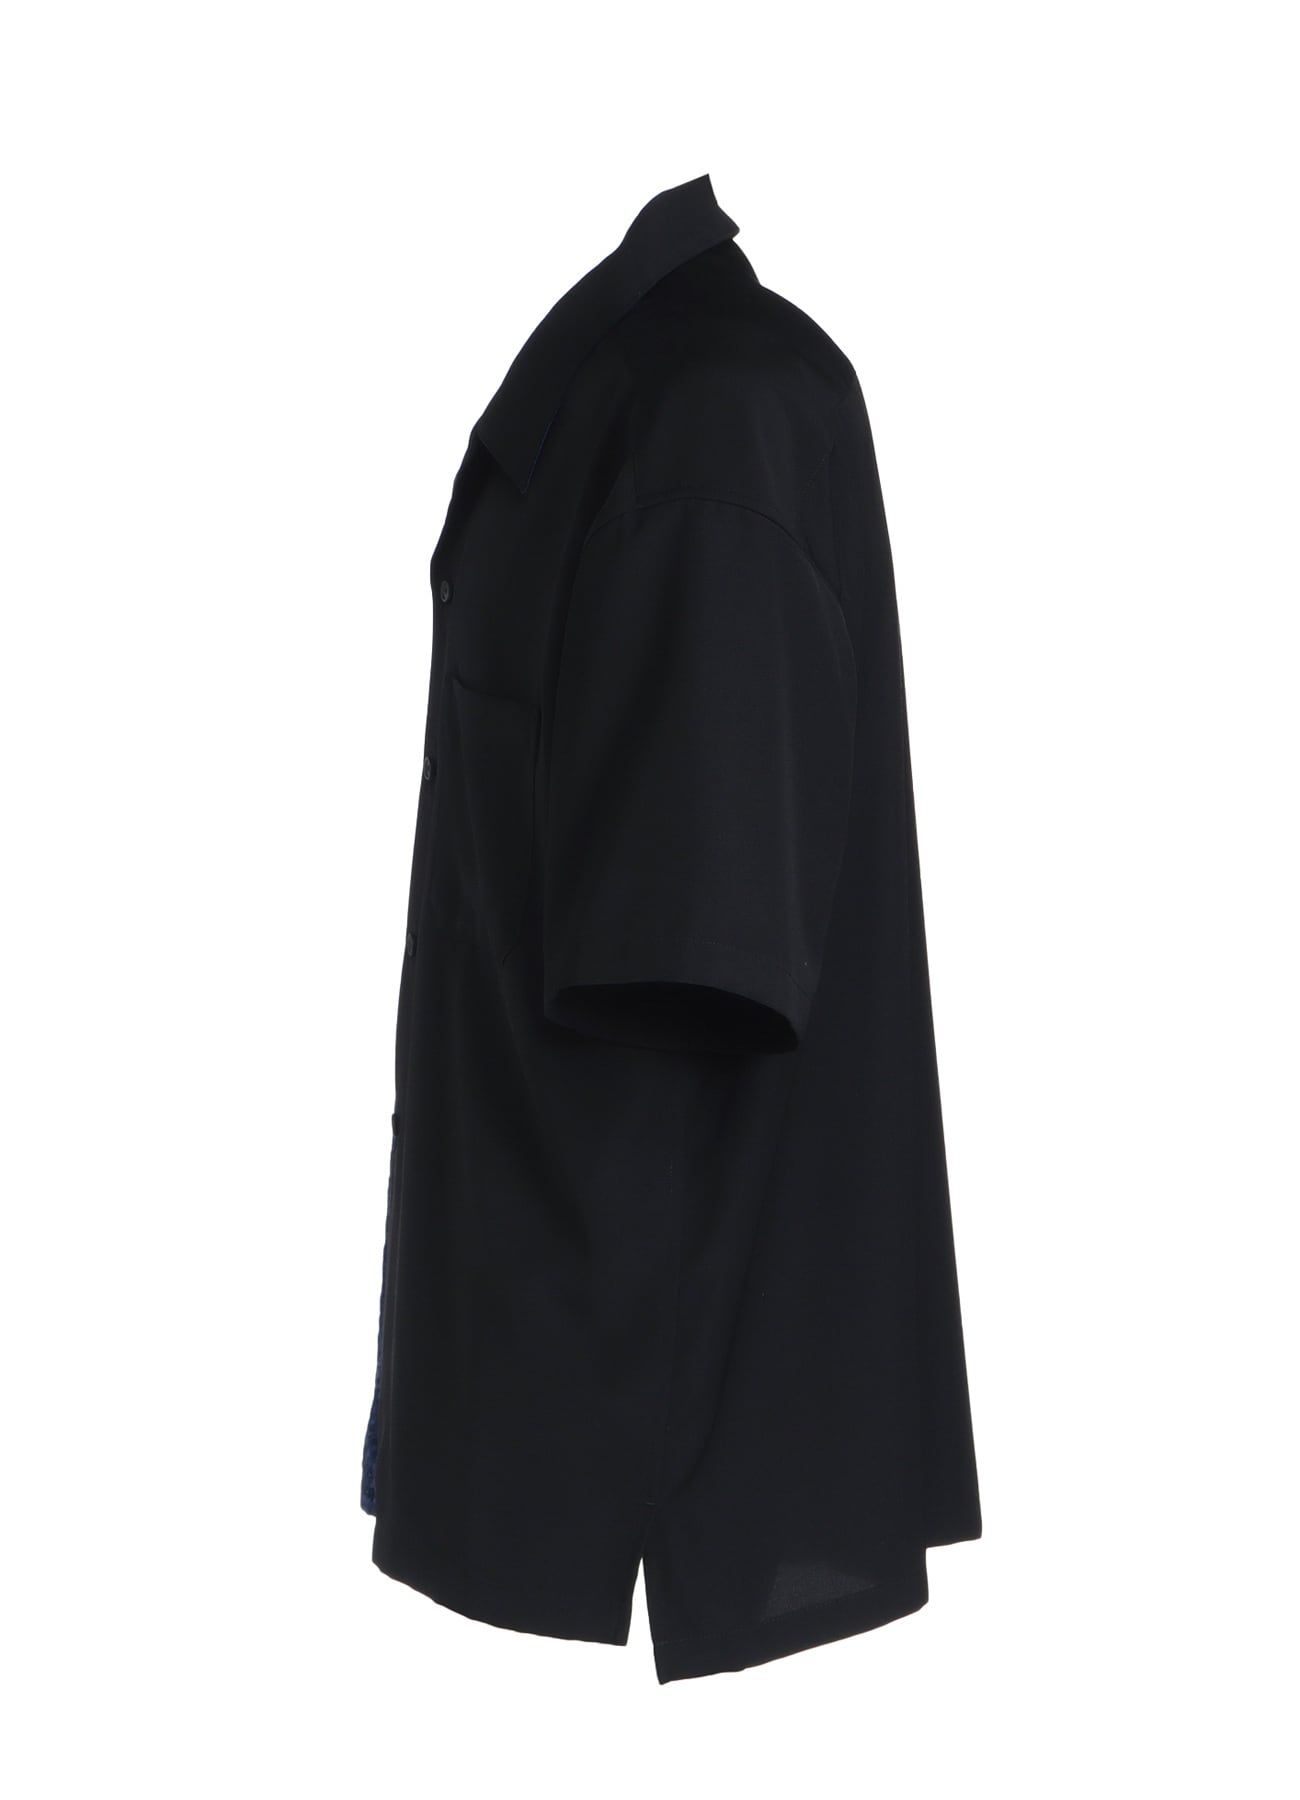 GABARDINE + MURAL LACE FADED FLOCKY LINEN CLOTH OPEN-COLLAR SHIRT